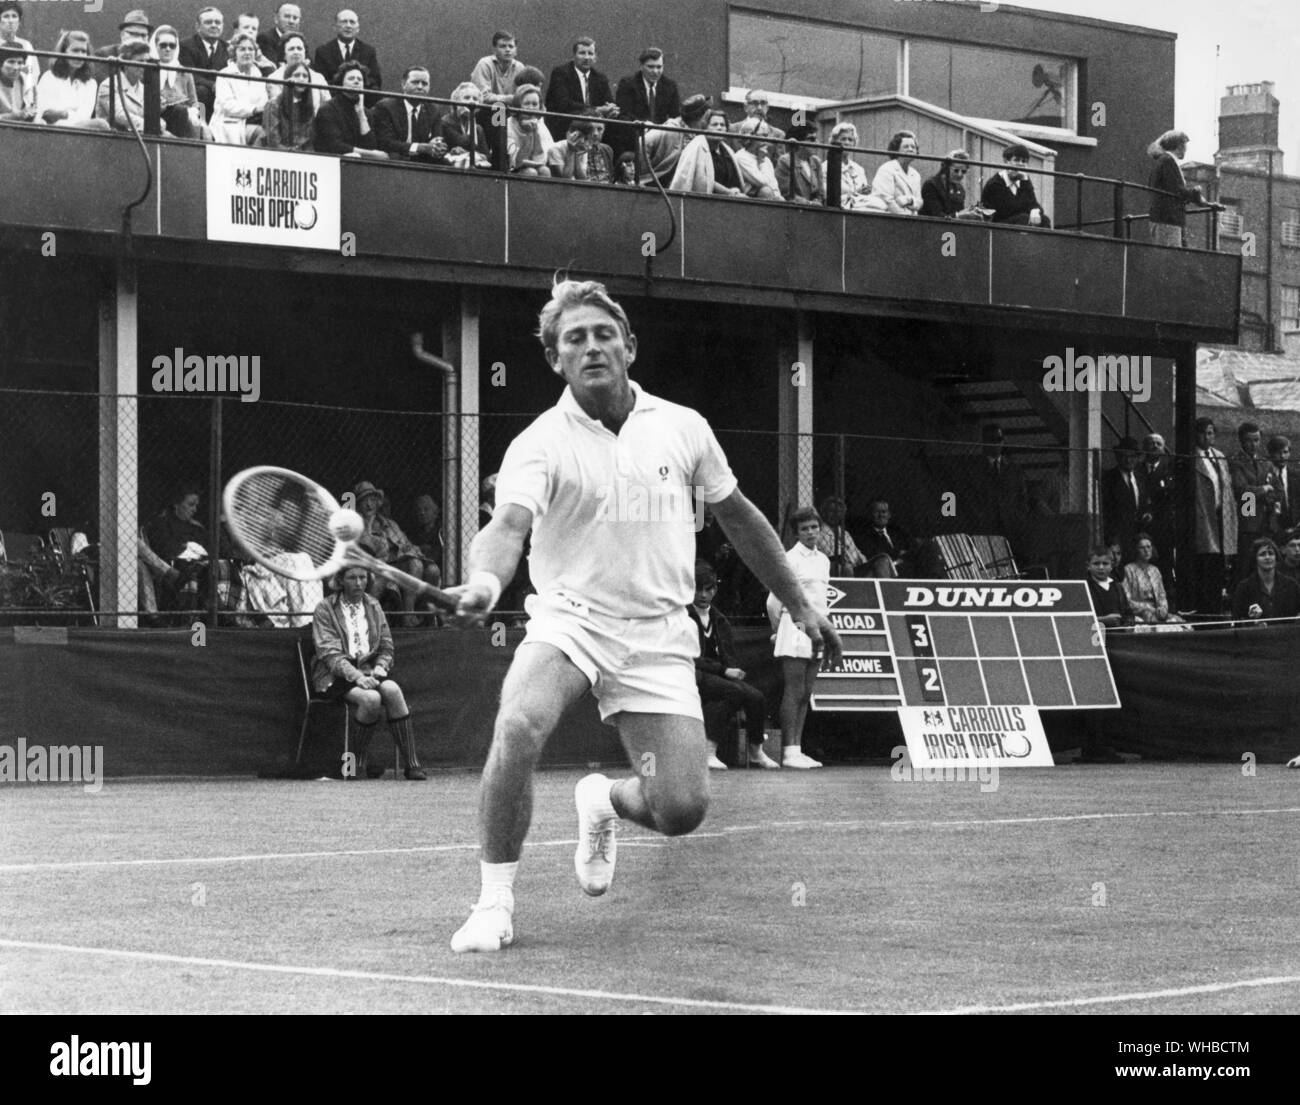 Lew Hoad - joueuse de tennis à jouer au Championnat irlandais. Alan Lewis (Lew Hoad) (né le 23 novembre 1934 à Glebe, New South Wales, Australie, est mort le 3 juillet 1994 à Fuengirola, Espagne) était un champion tennis player. Classé parmi les 21 meilleurs joueurs de tous les temps. Depuis cinq ans, à partir de 1952, il était classé dans le Top 10 mondial pour les amateurs, d'atteindre la première position en 1956.. Banque D'Images